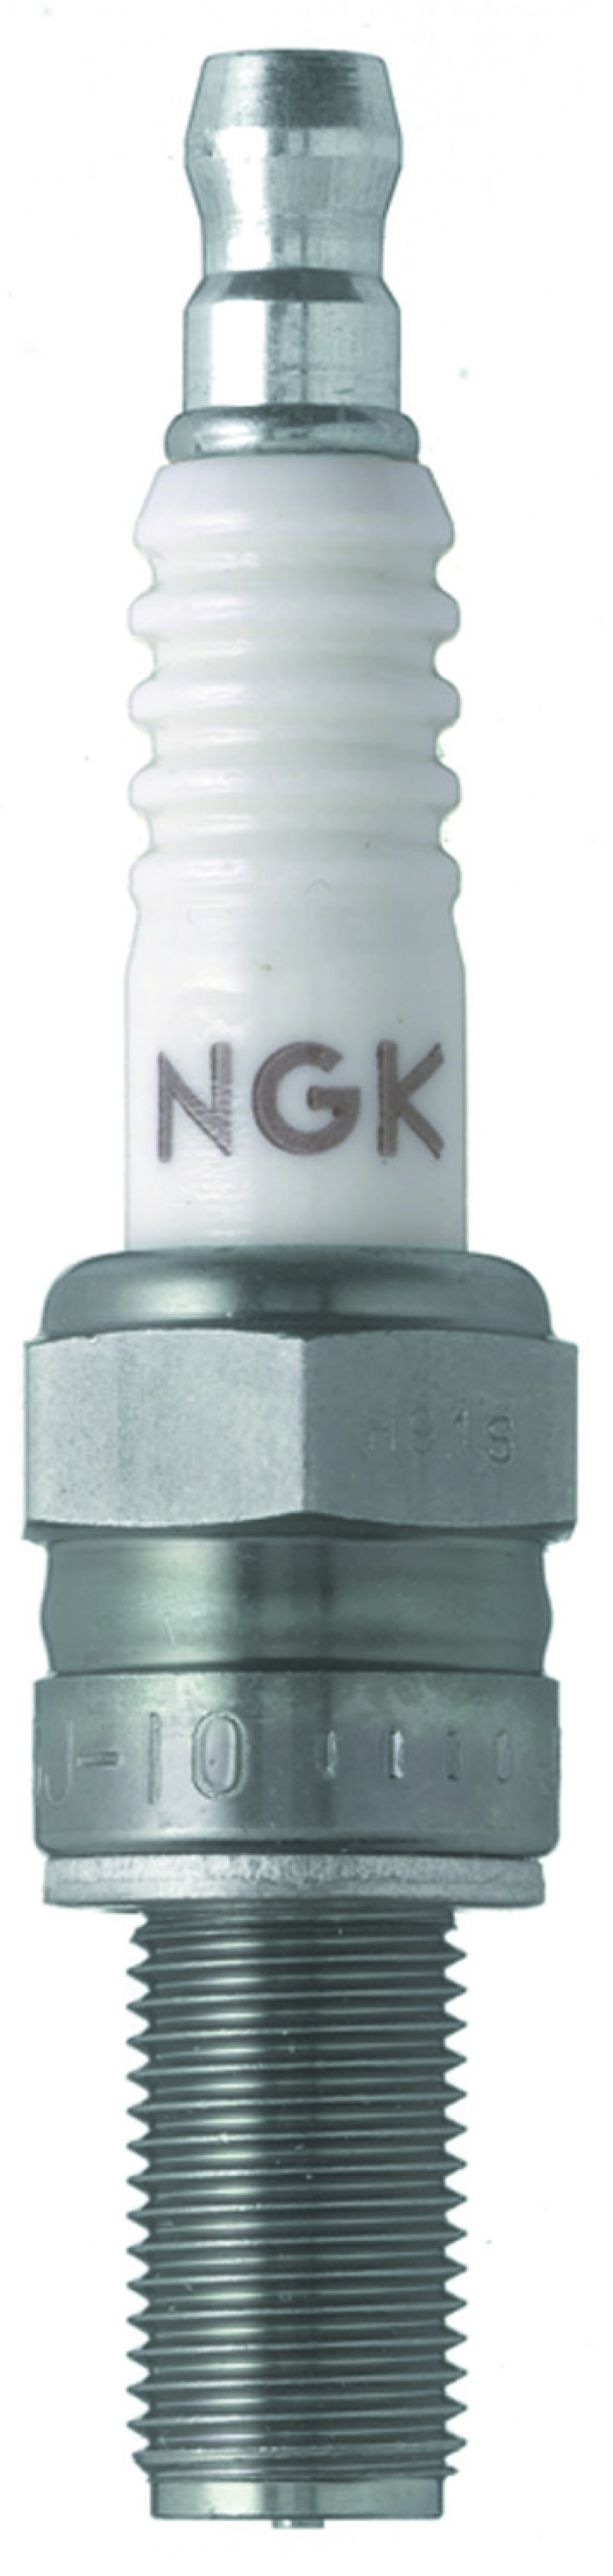 NGK Racing Spark Plug Box of 4 (R0045Q-11) - 5957